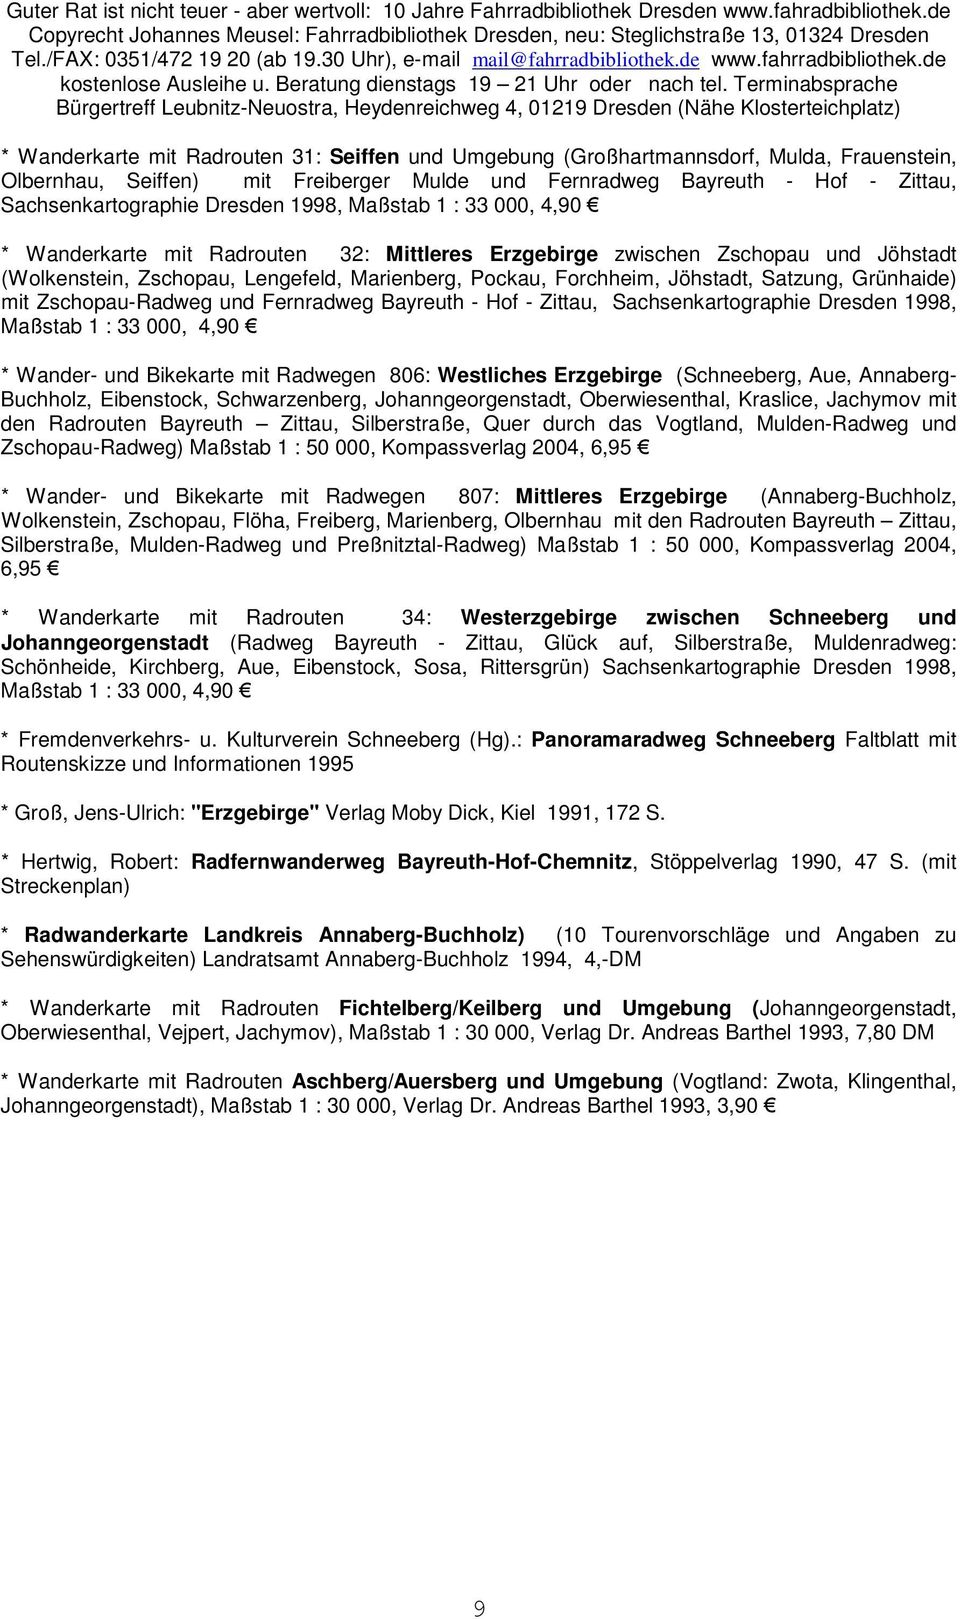 Satzung, Grünhaide) mit Zschopau-Radweg und Fernradweg Bayreuth - Hof - Zittau, Sachsenkartographie Dresden 1998, Maßstab 1 : 33 000, 4,90 * Wander- und Bikekarte mit Radwegen 806: Westliches